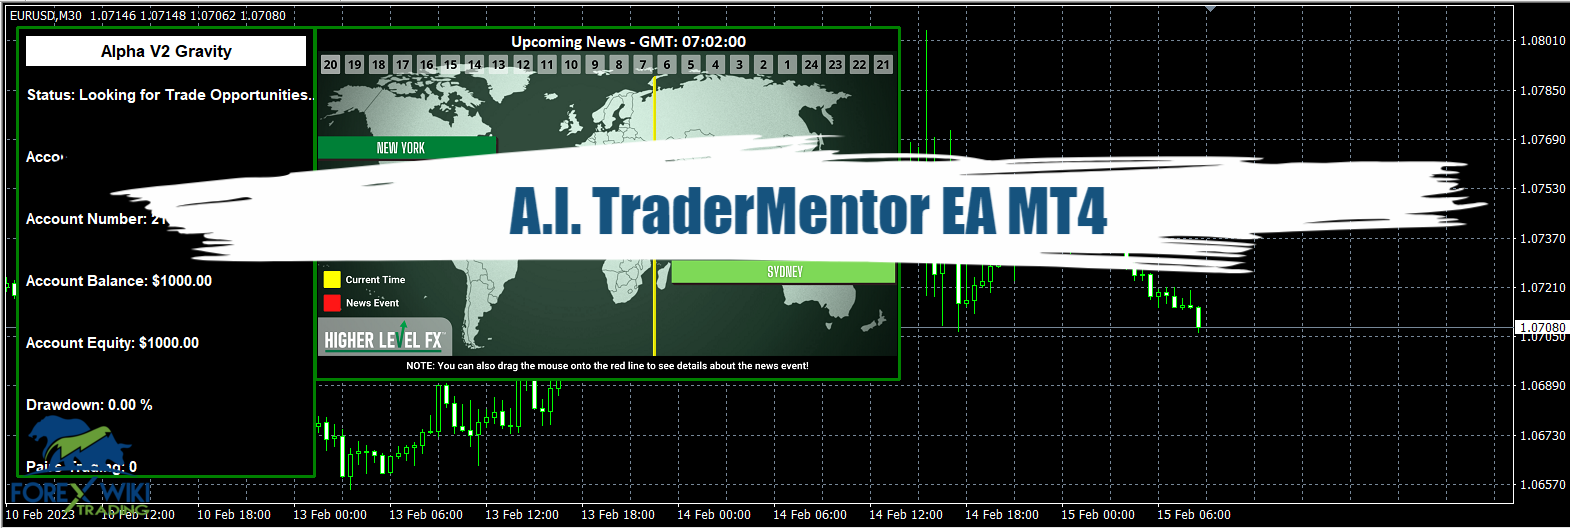 A.I. TraderMentor EA MT4 - Free Download 19